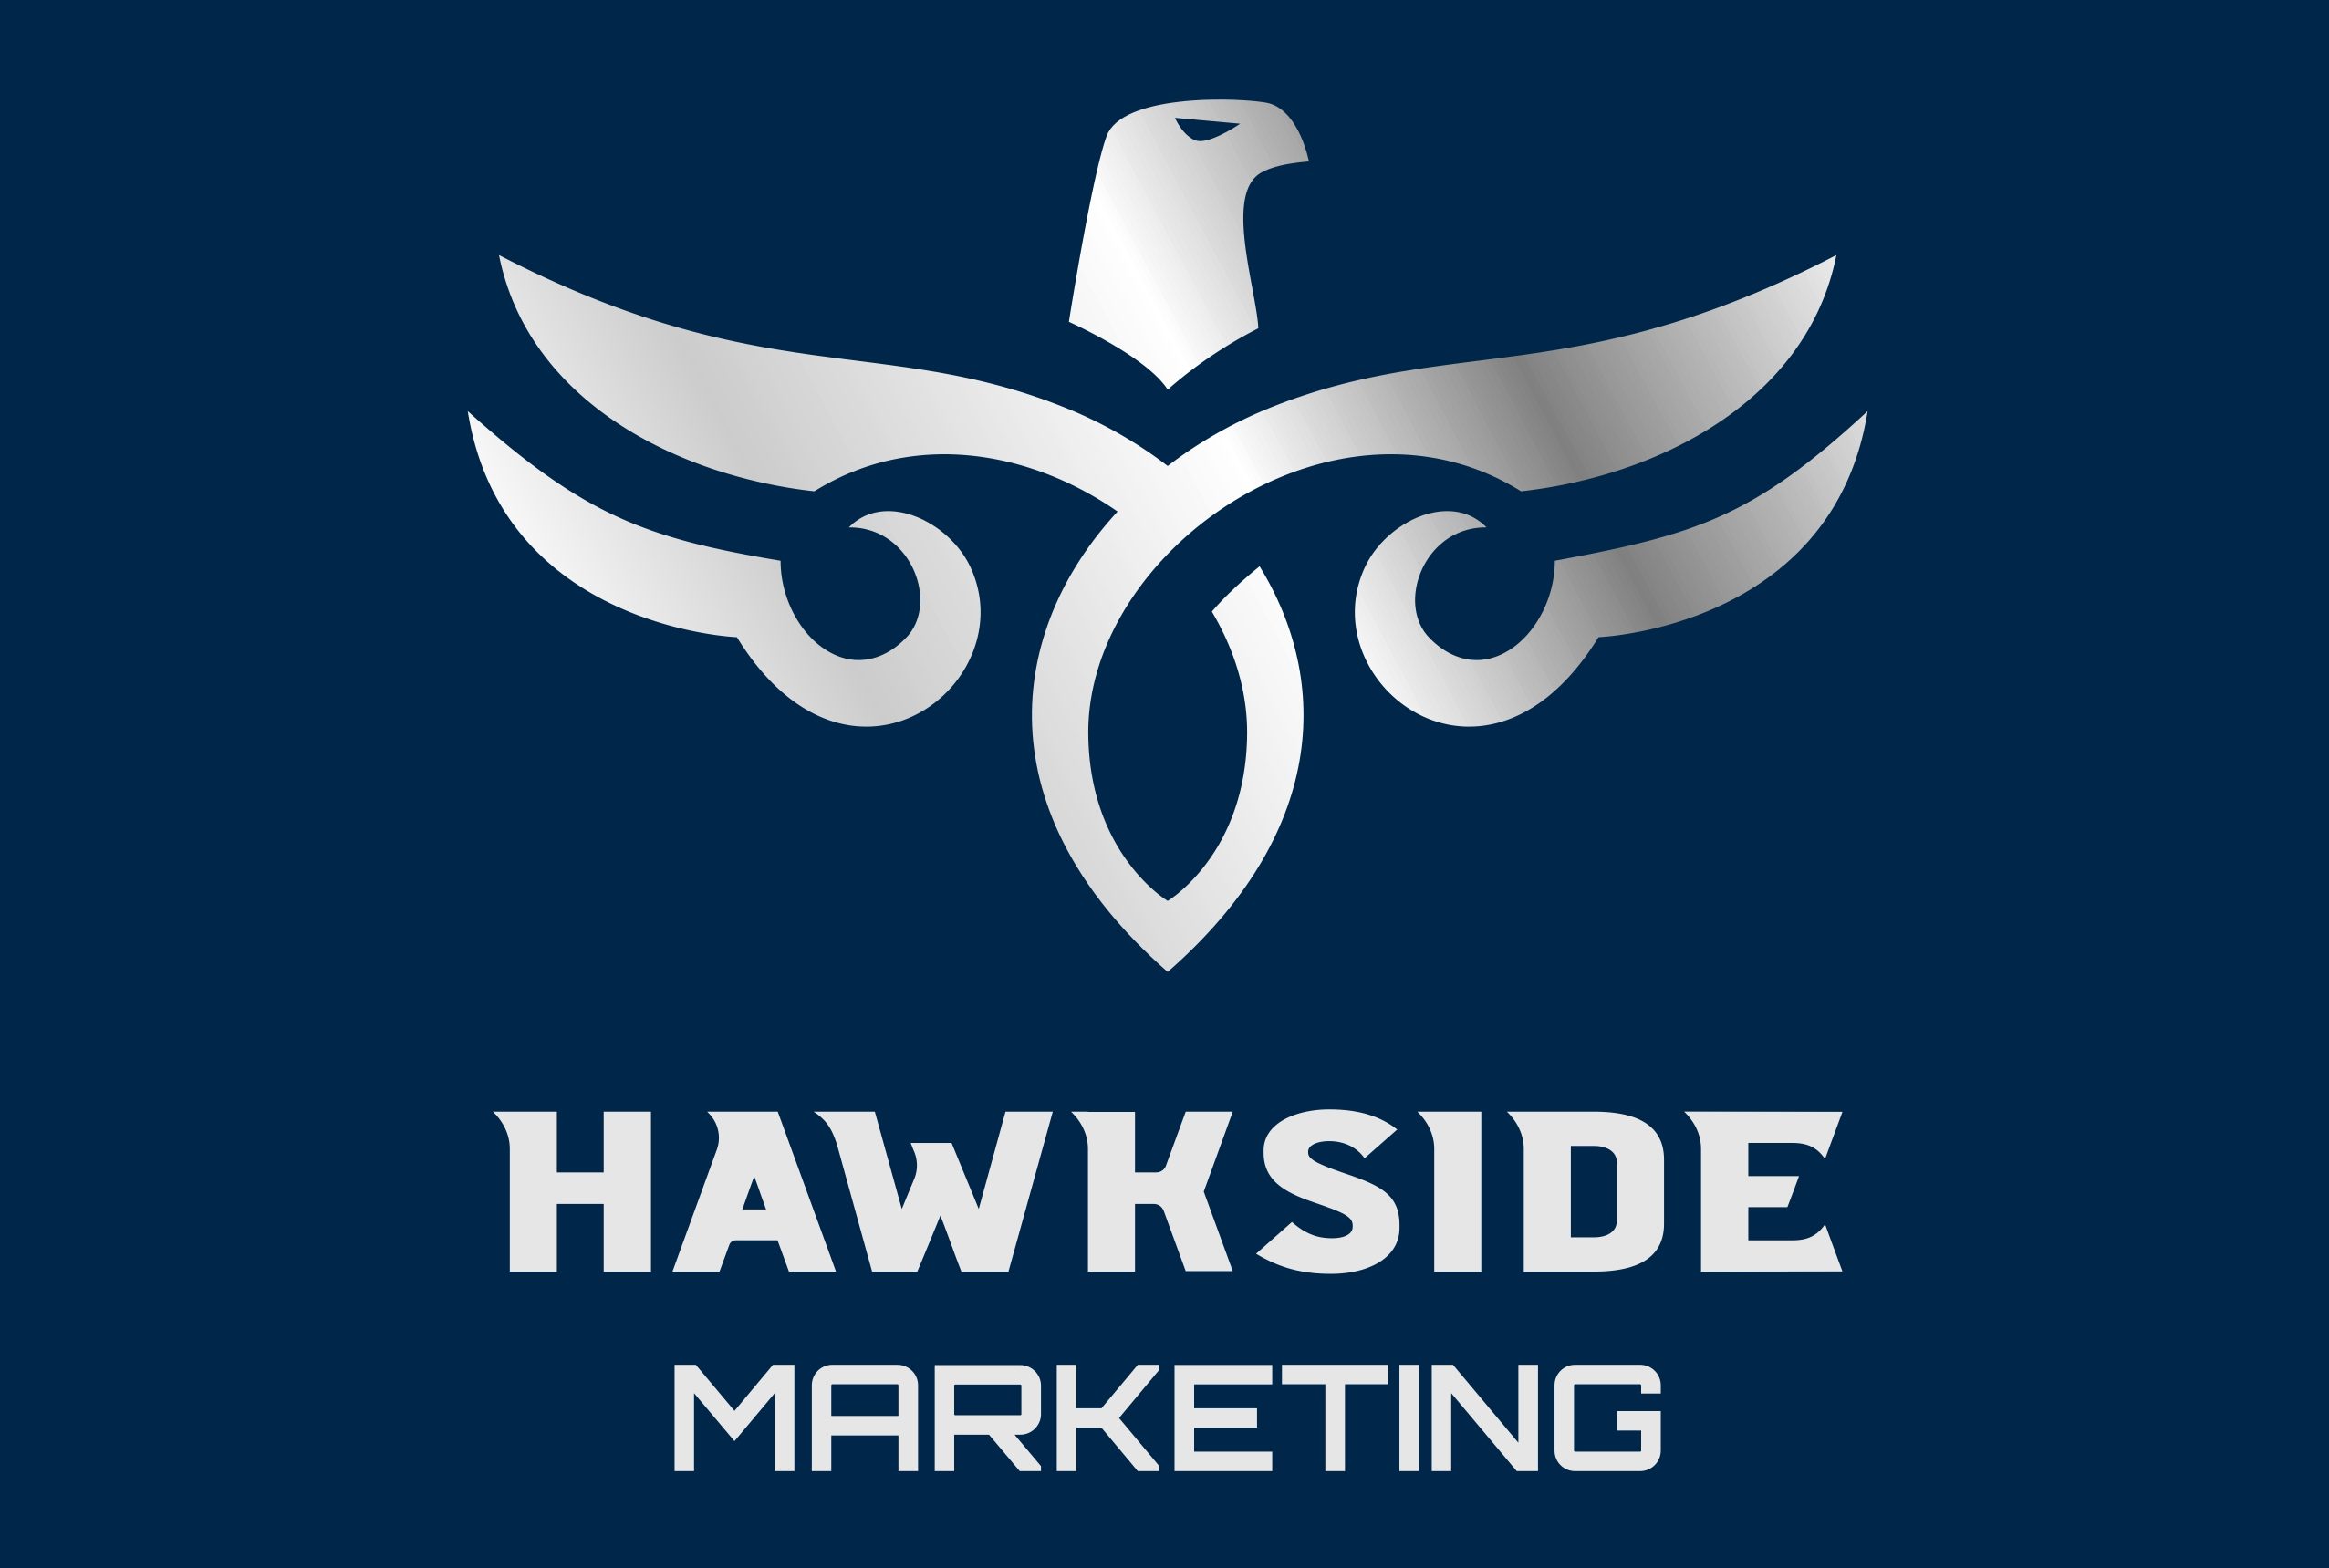 Hawkside Marketing